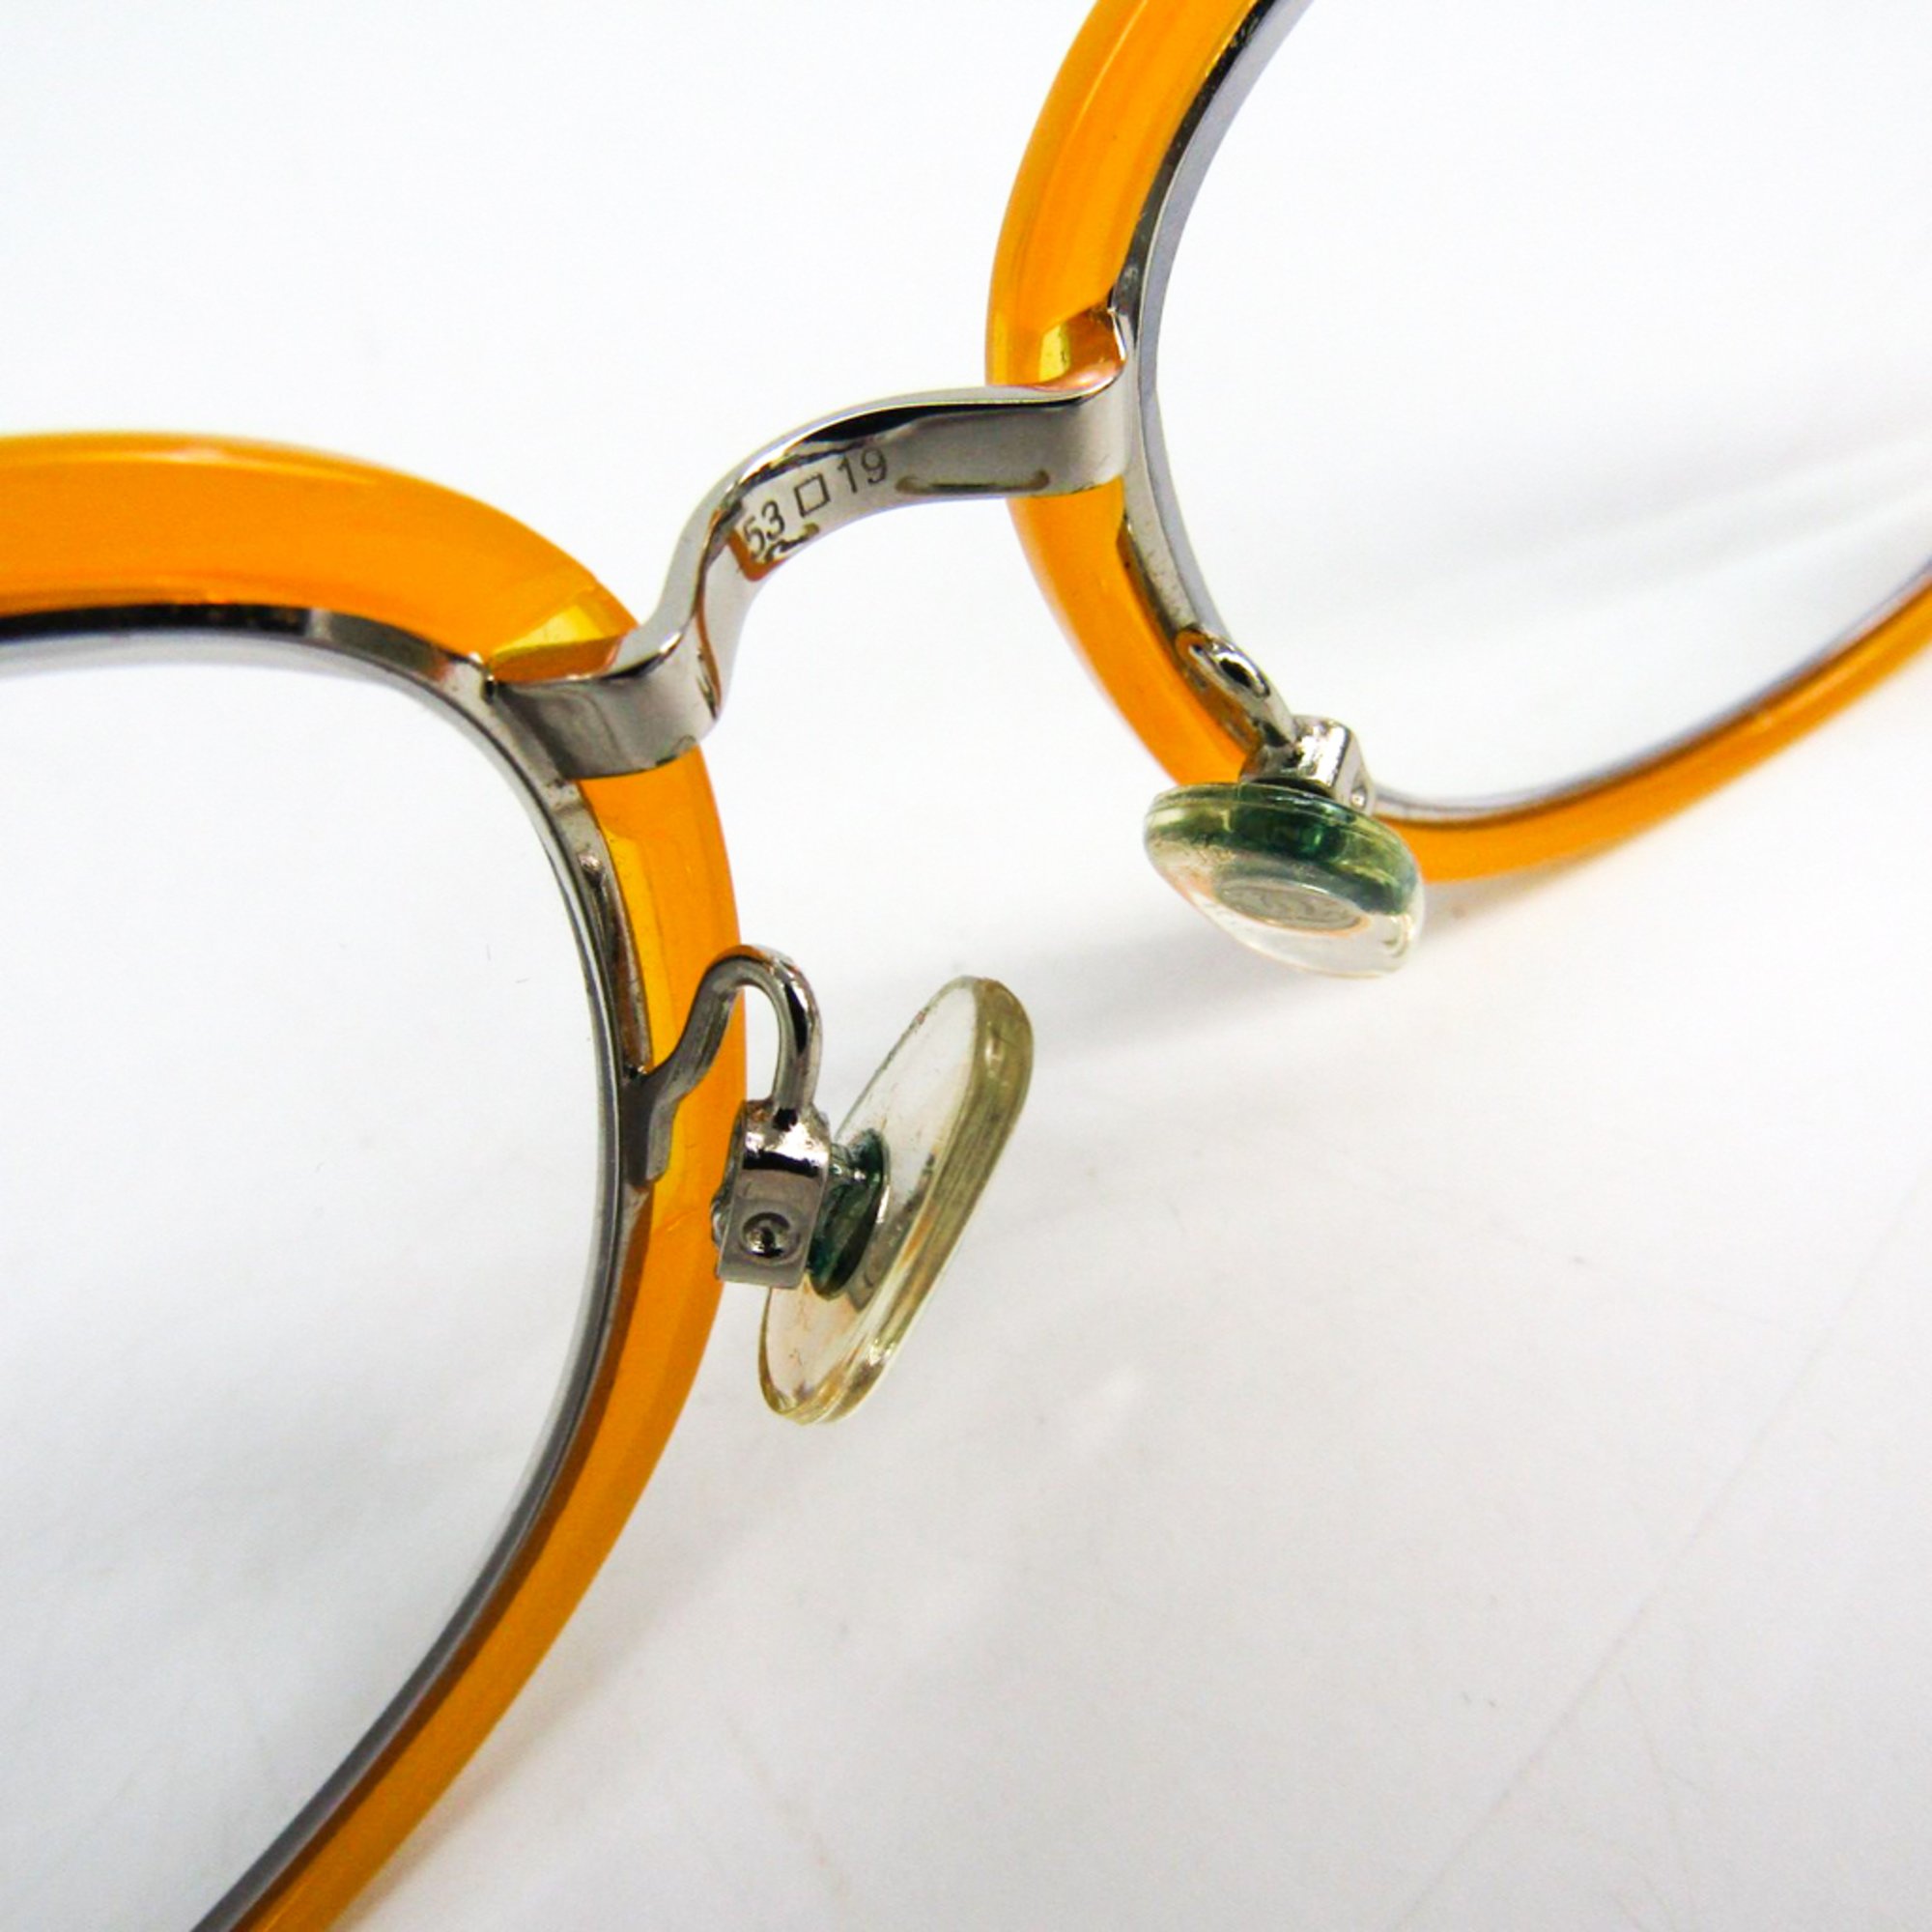 Chanel Women's Prescription Glasses Yellow 2171